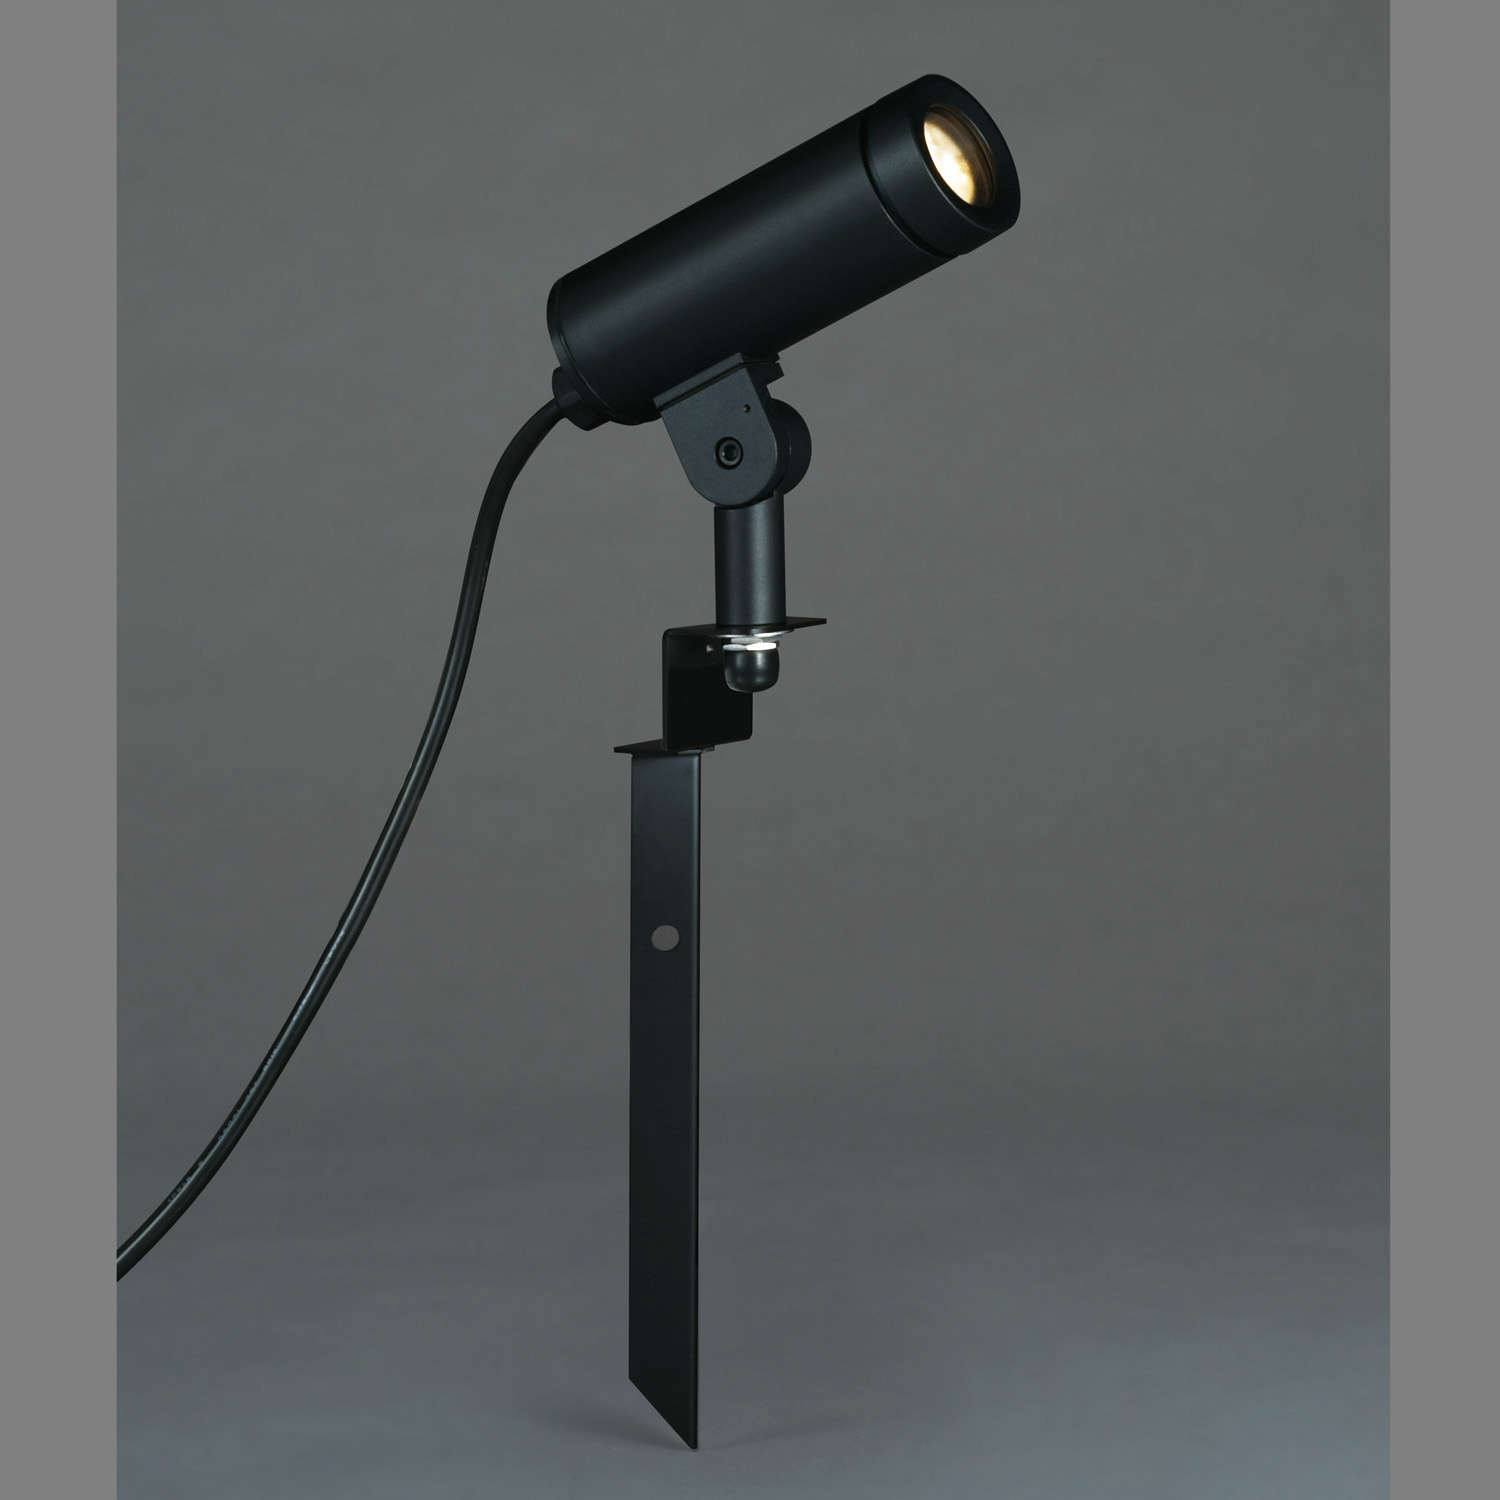 山田照明 山田照明(YAMADA) AD-2605-L ガーデンライト LEDランプ交換型 非調光 電球色 防雨型 ダークシルバー スパイク式 [♪] 